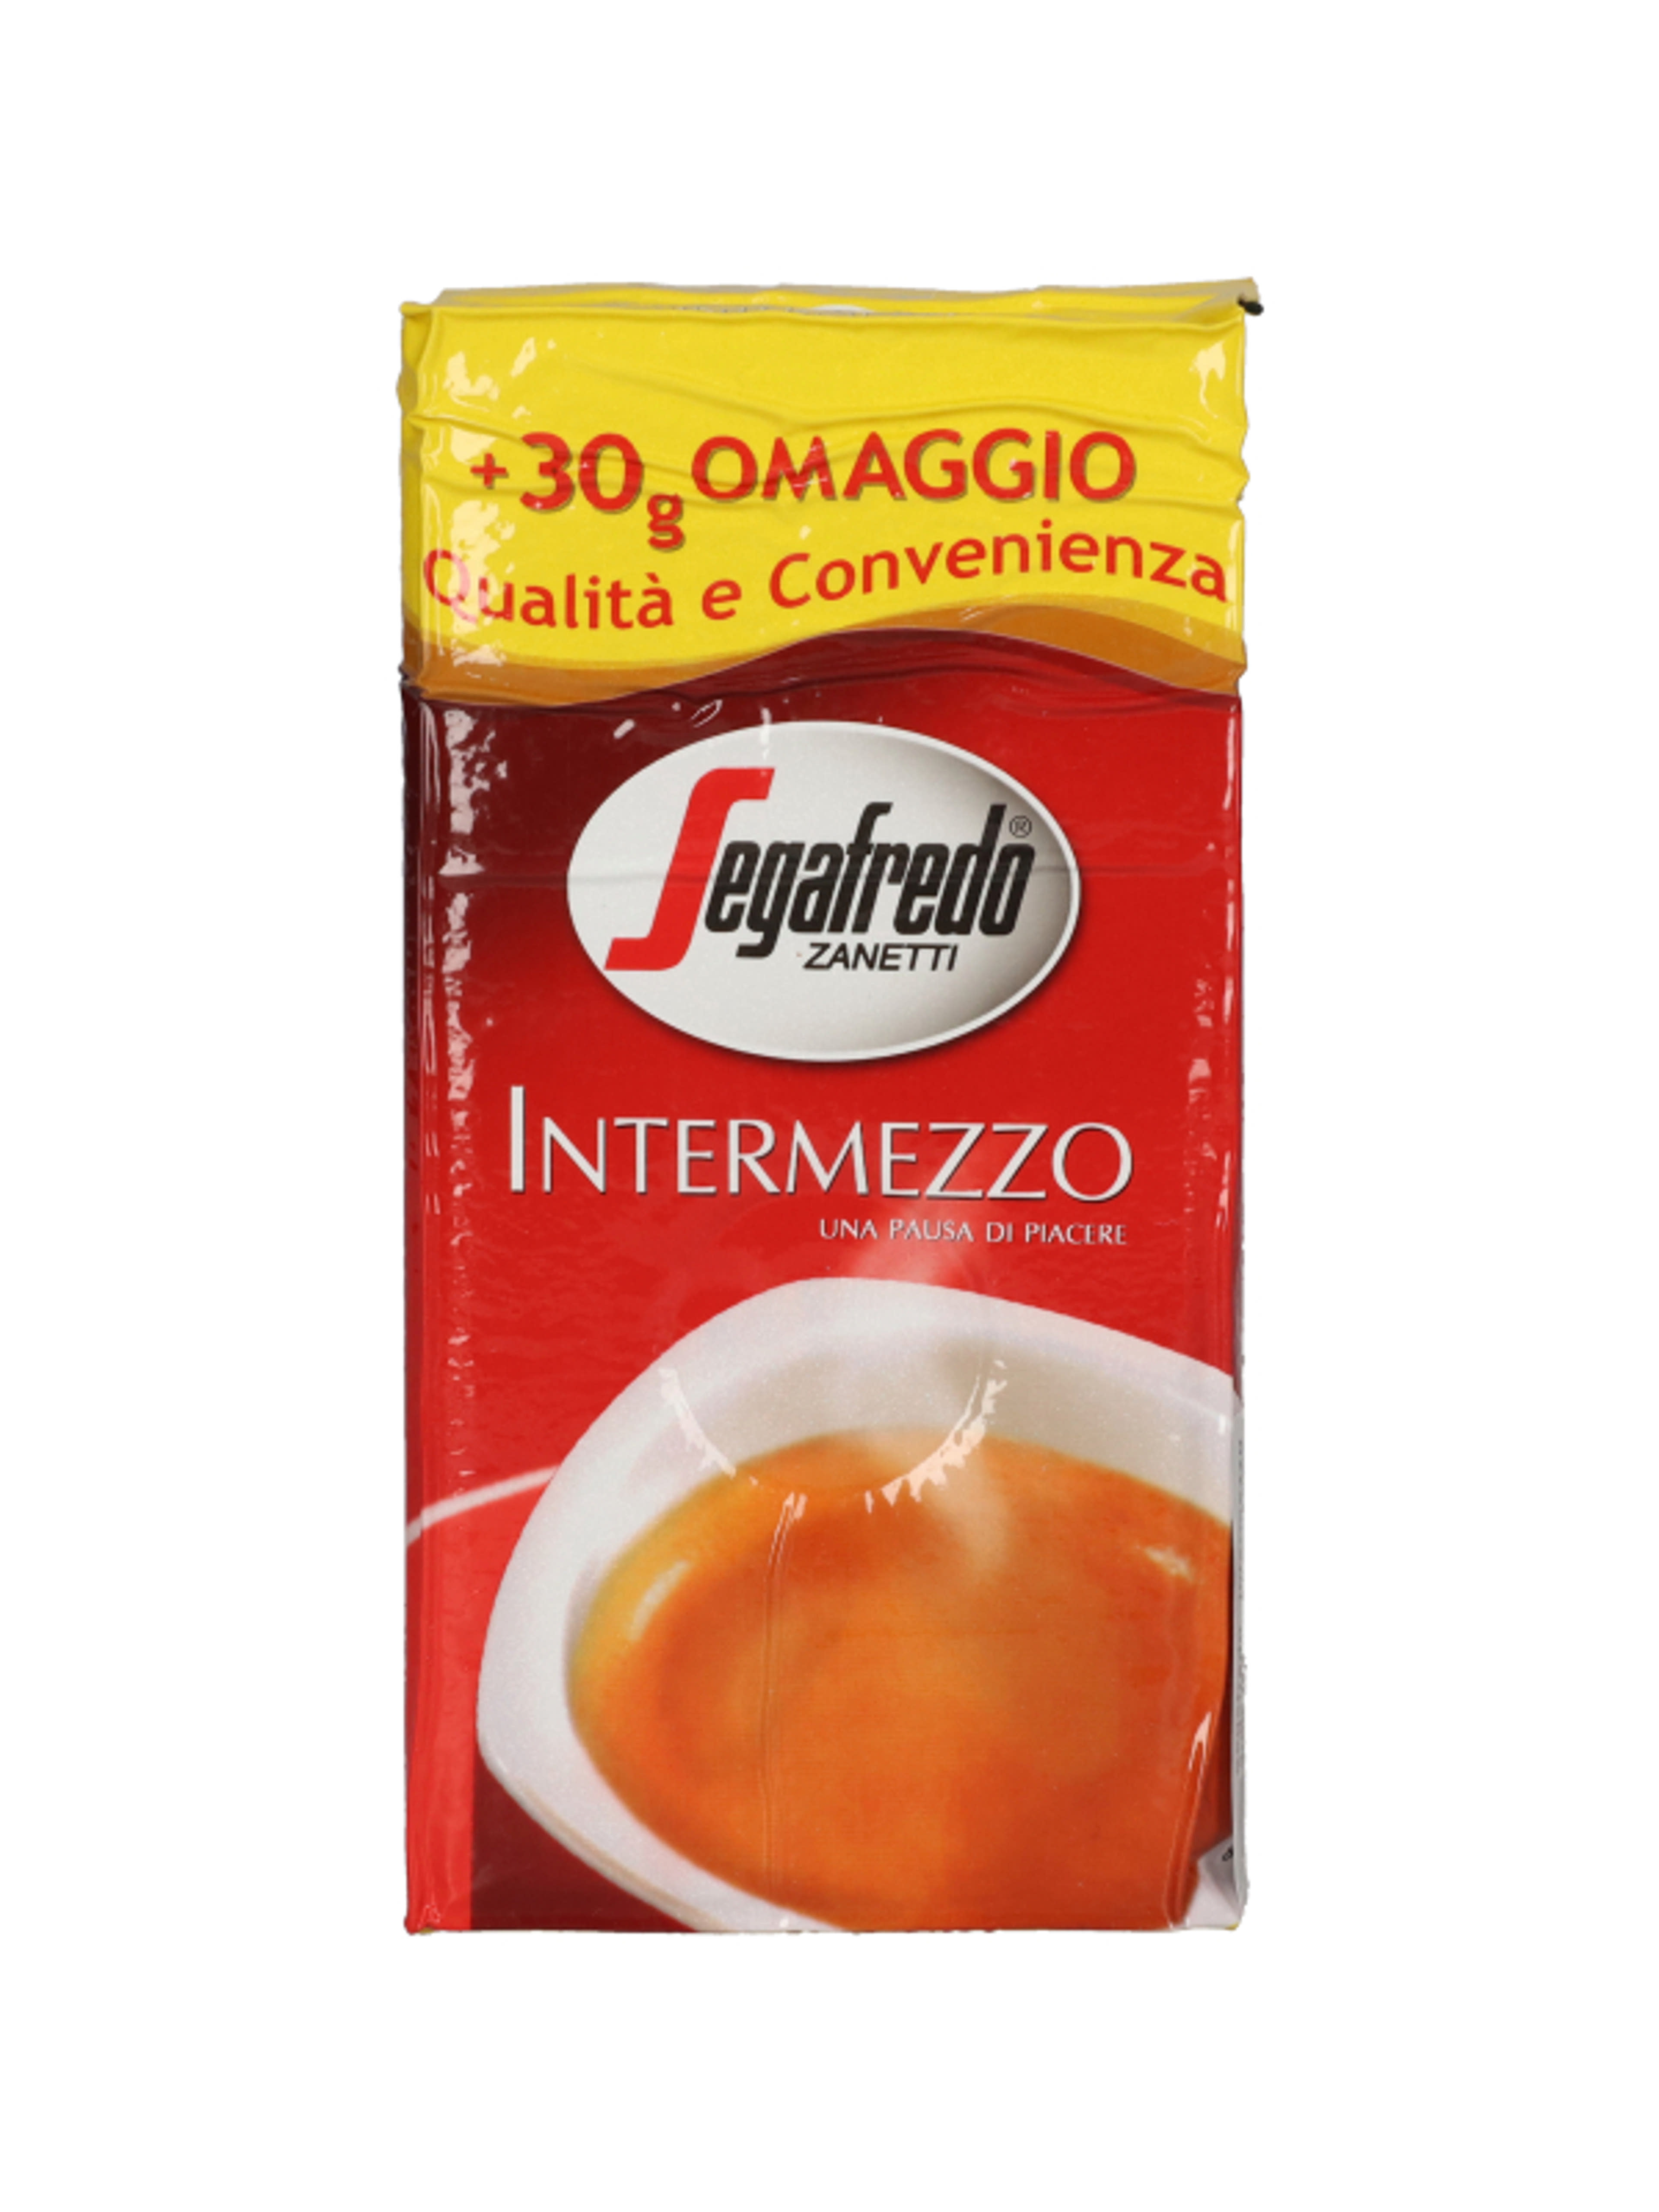 Segafredo intermezzo őrölt kávé - 280 g